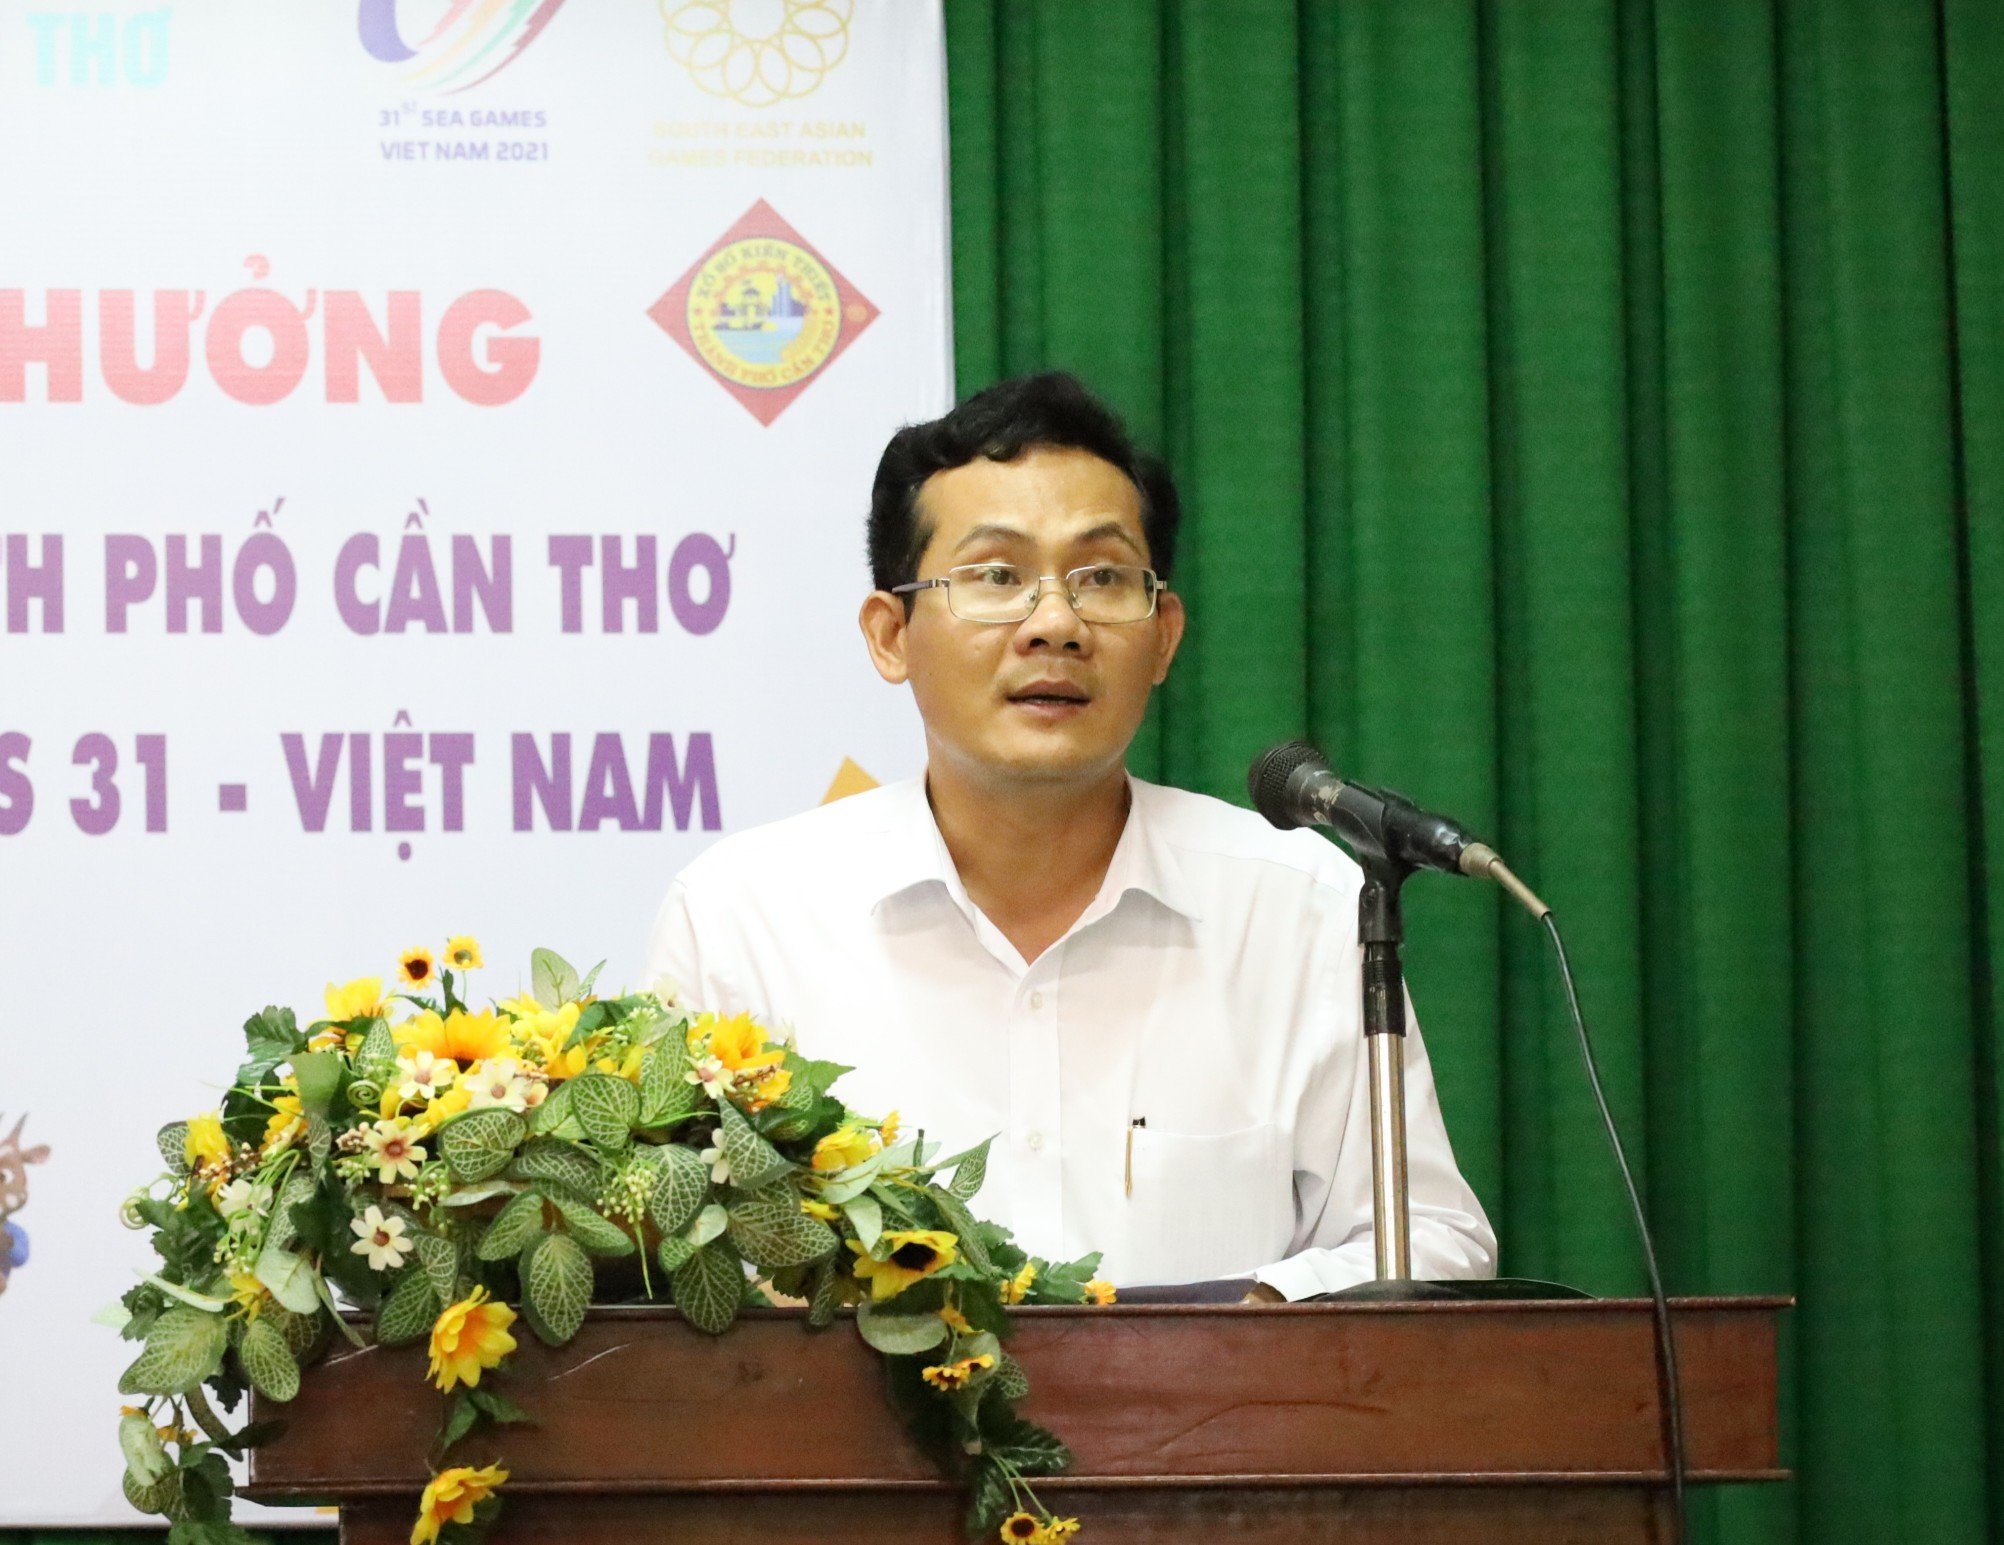 Ông Nguyễn Minh Tuấn – Phó Giám đốc phụ trách Sở Văn hóa, Thể thao và Du lịch TP. Cần Thơ phát biểu tại buổi lễ.